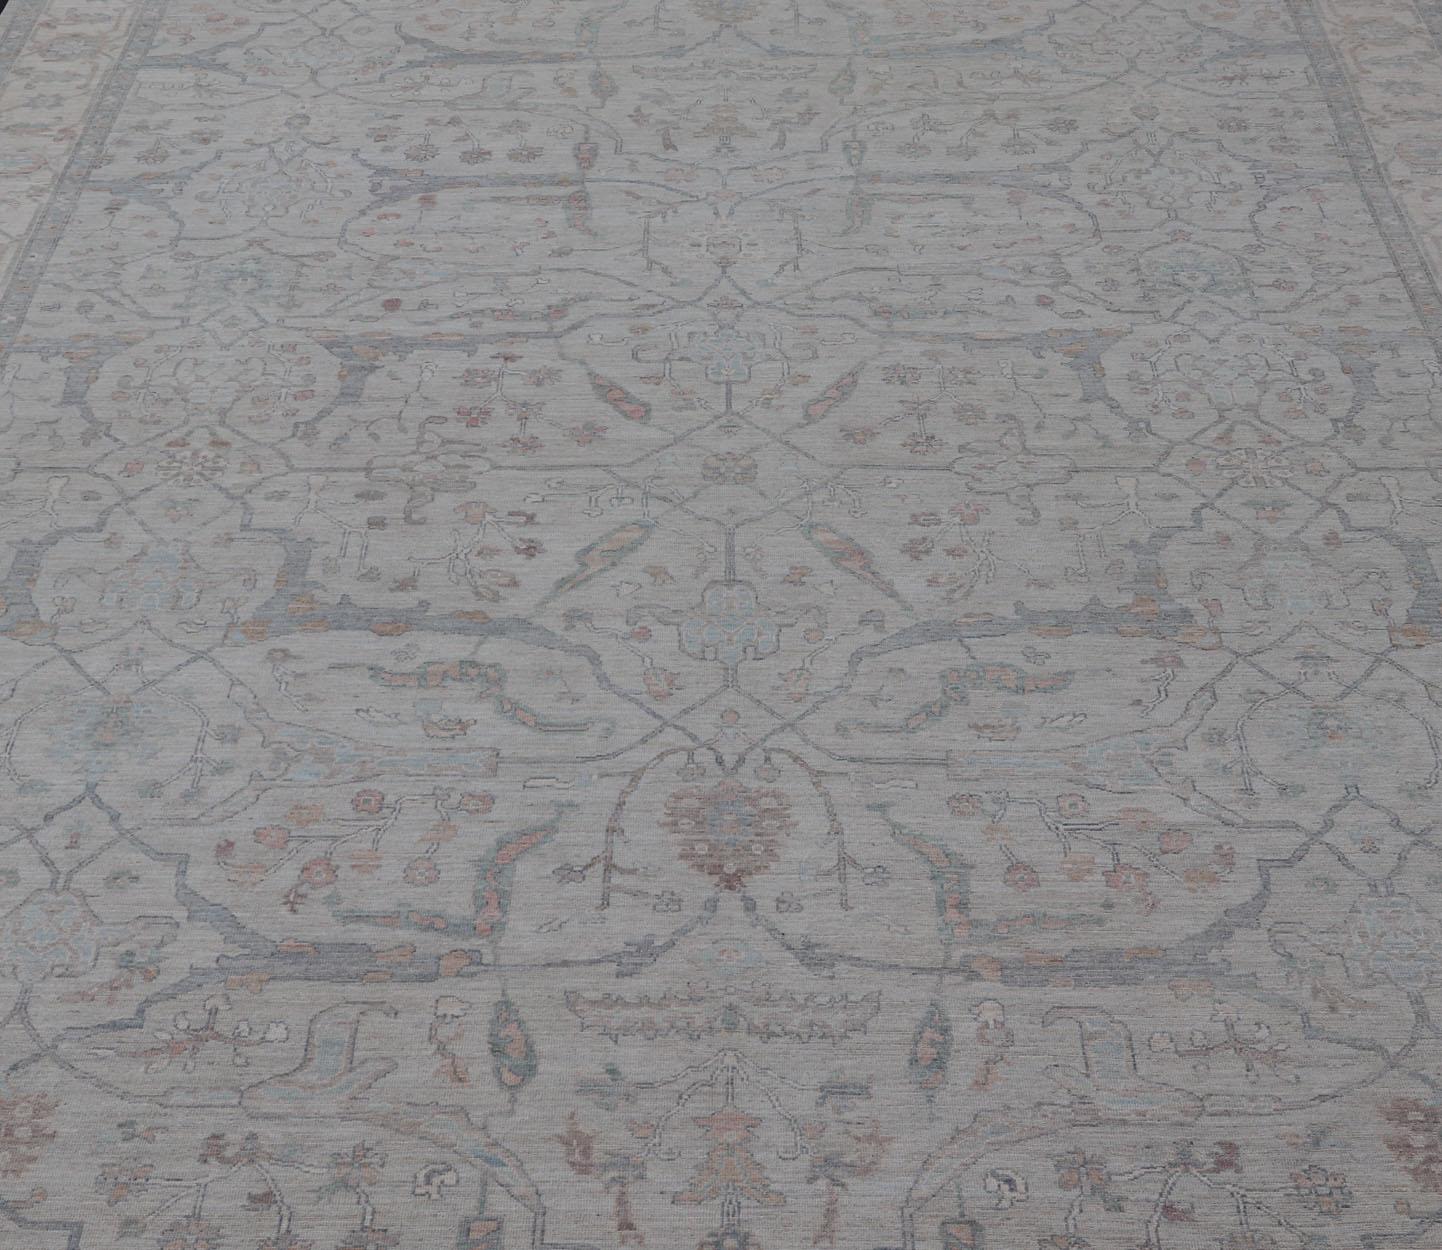 Très grand Oushak moderne avec motif floral au design organique sur fond gris clair et design en sourdine. Keivan Woven Arts ; tapis AWR-15243 Pays d'origine : Afghanistan Type : Oushak Design/One.

Mesures : 13'4 x 20' 

La bordure et le champ sont